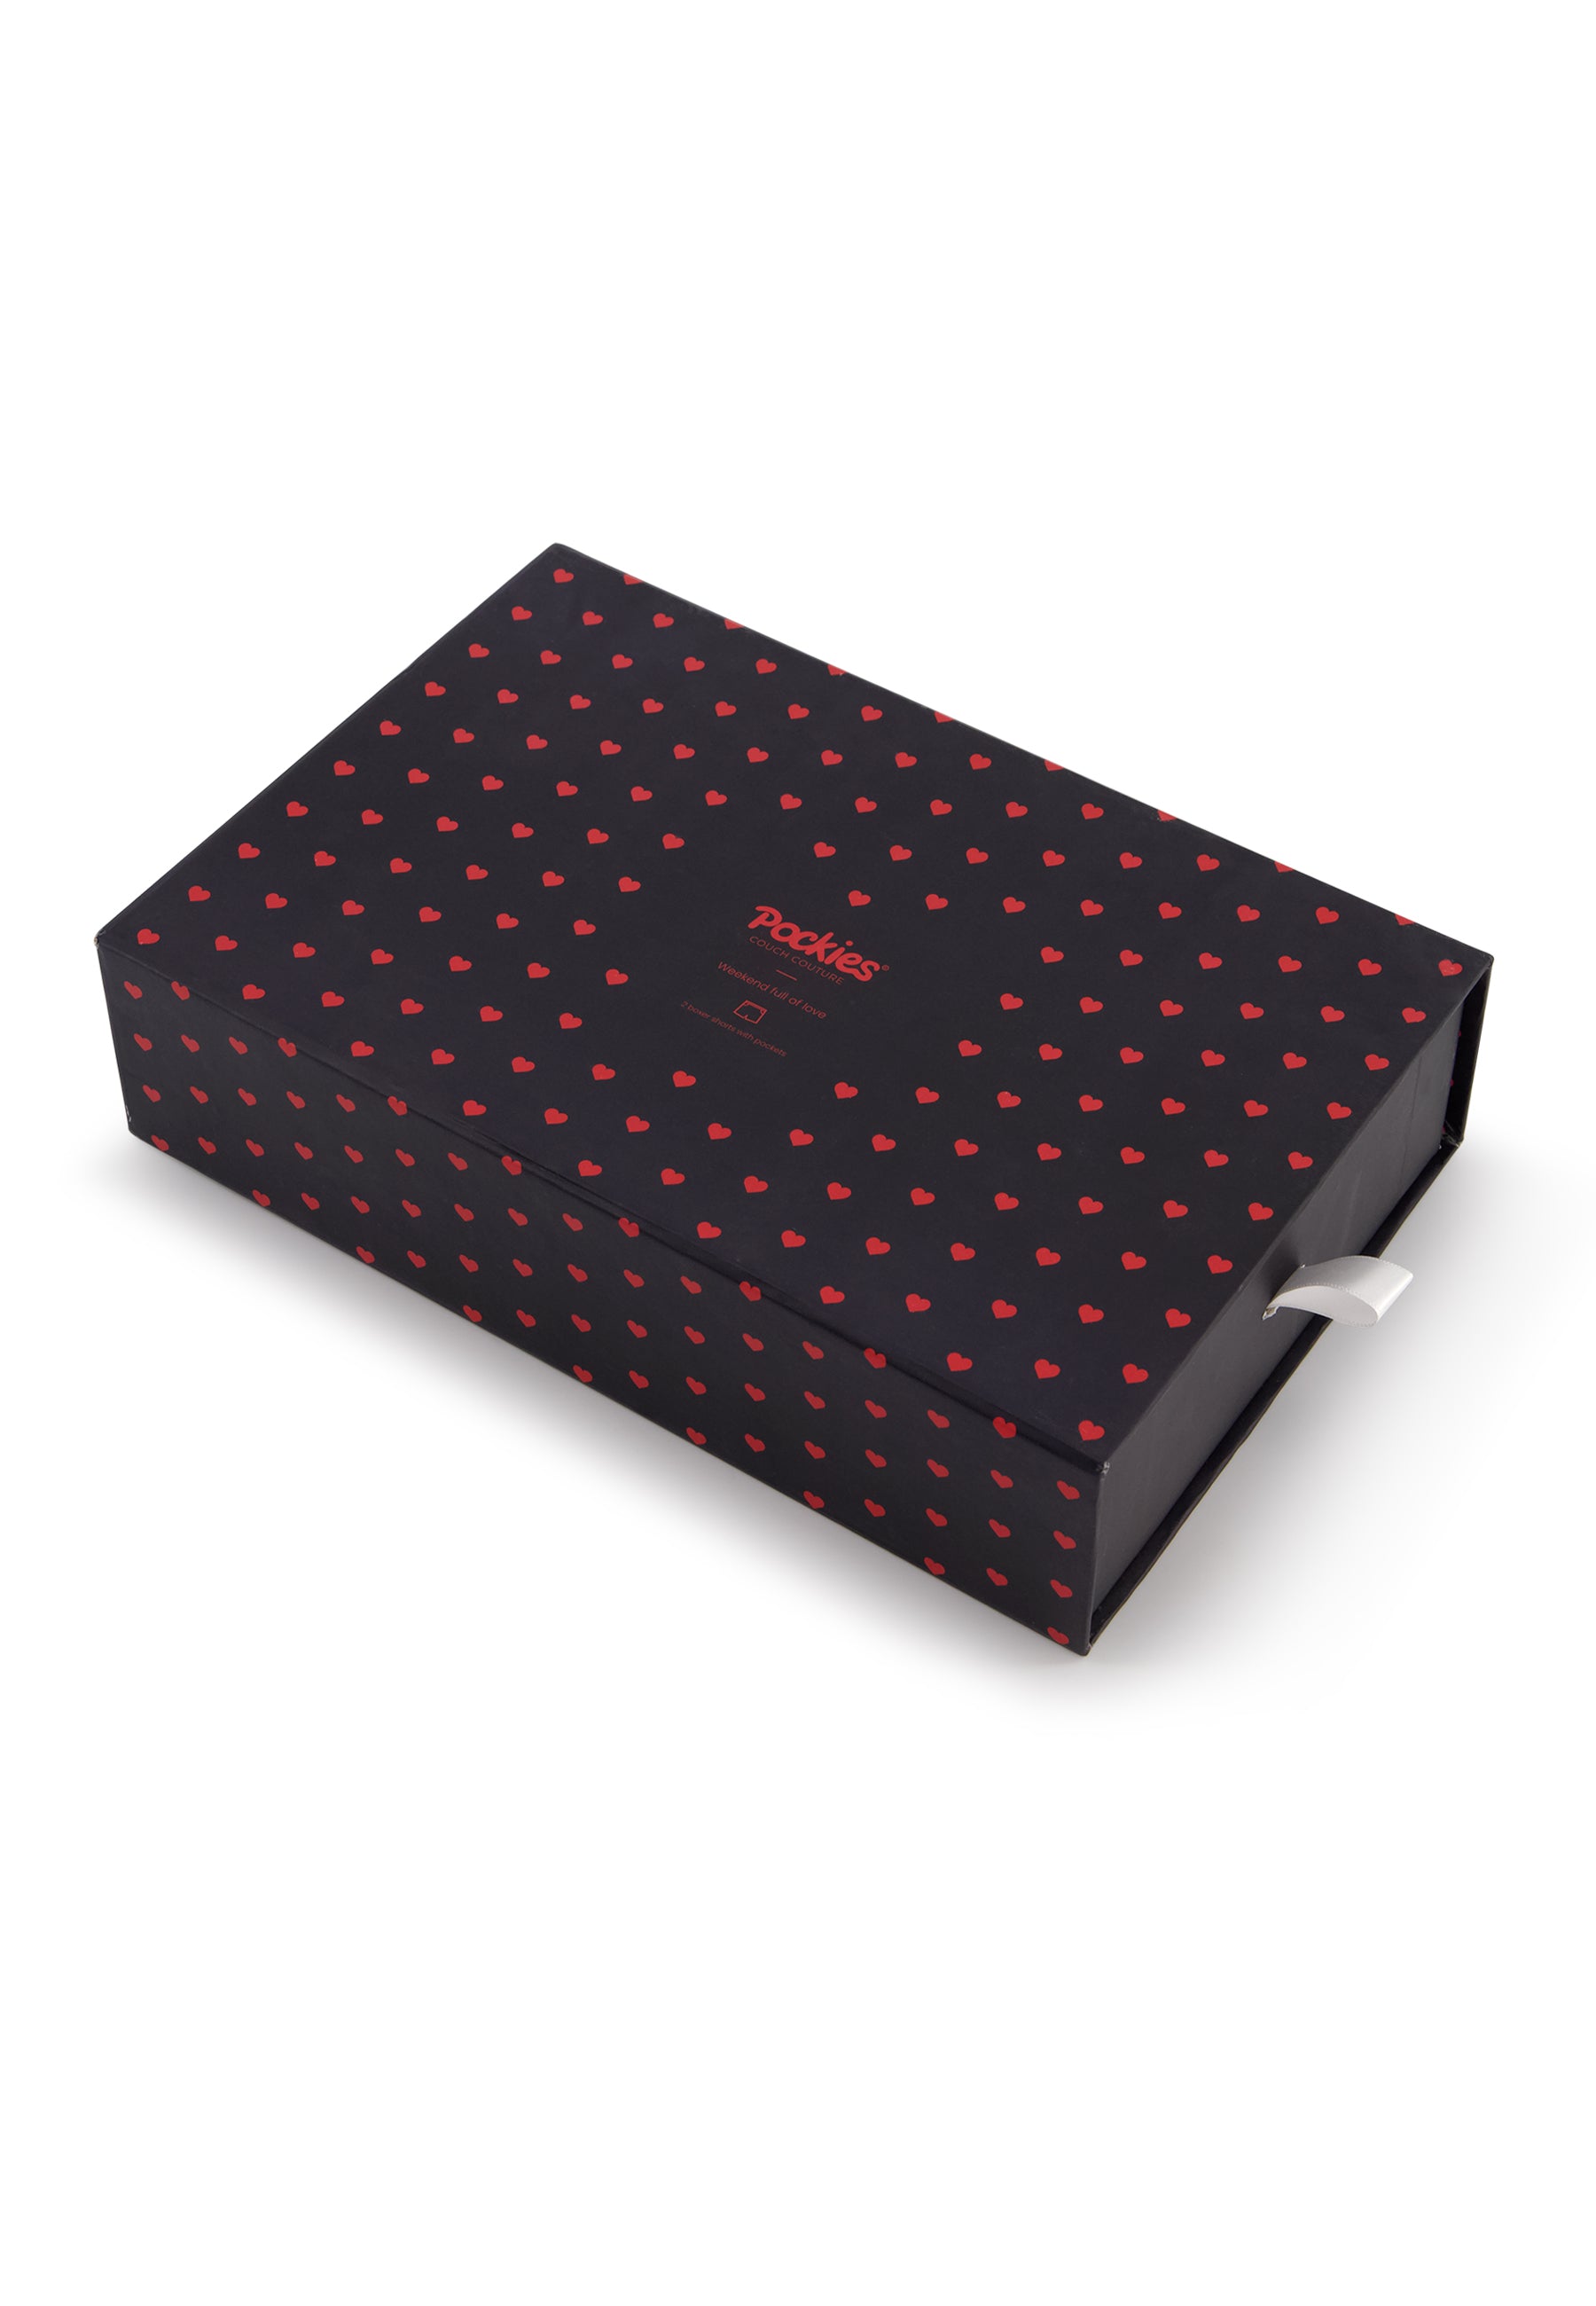 2-Pack Lovely Gift Box